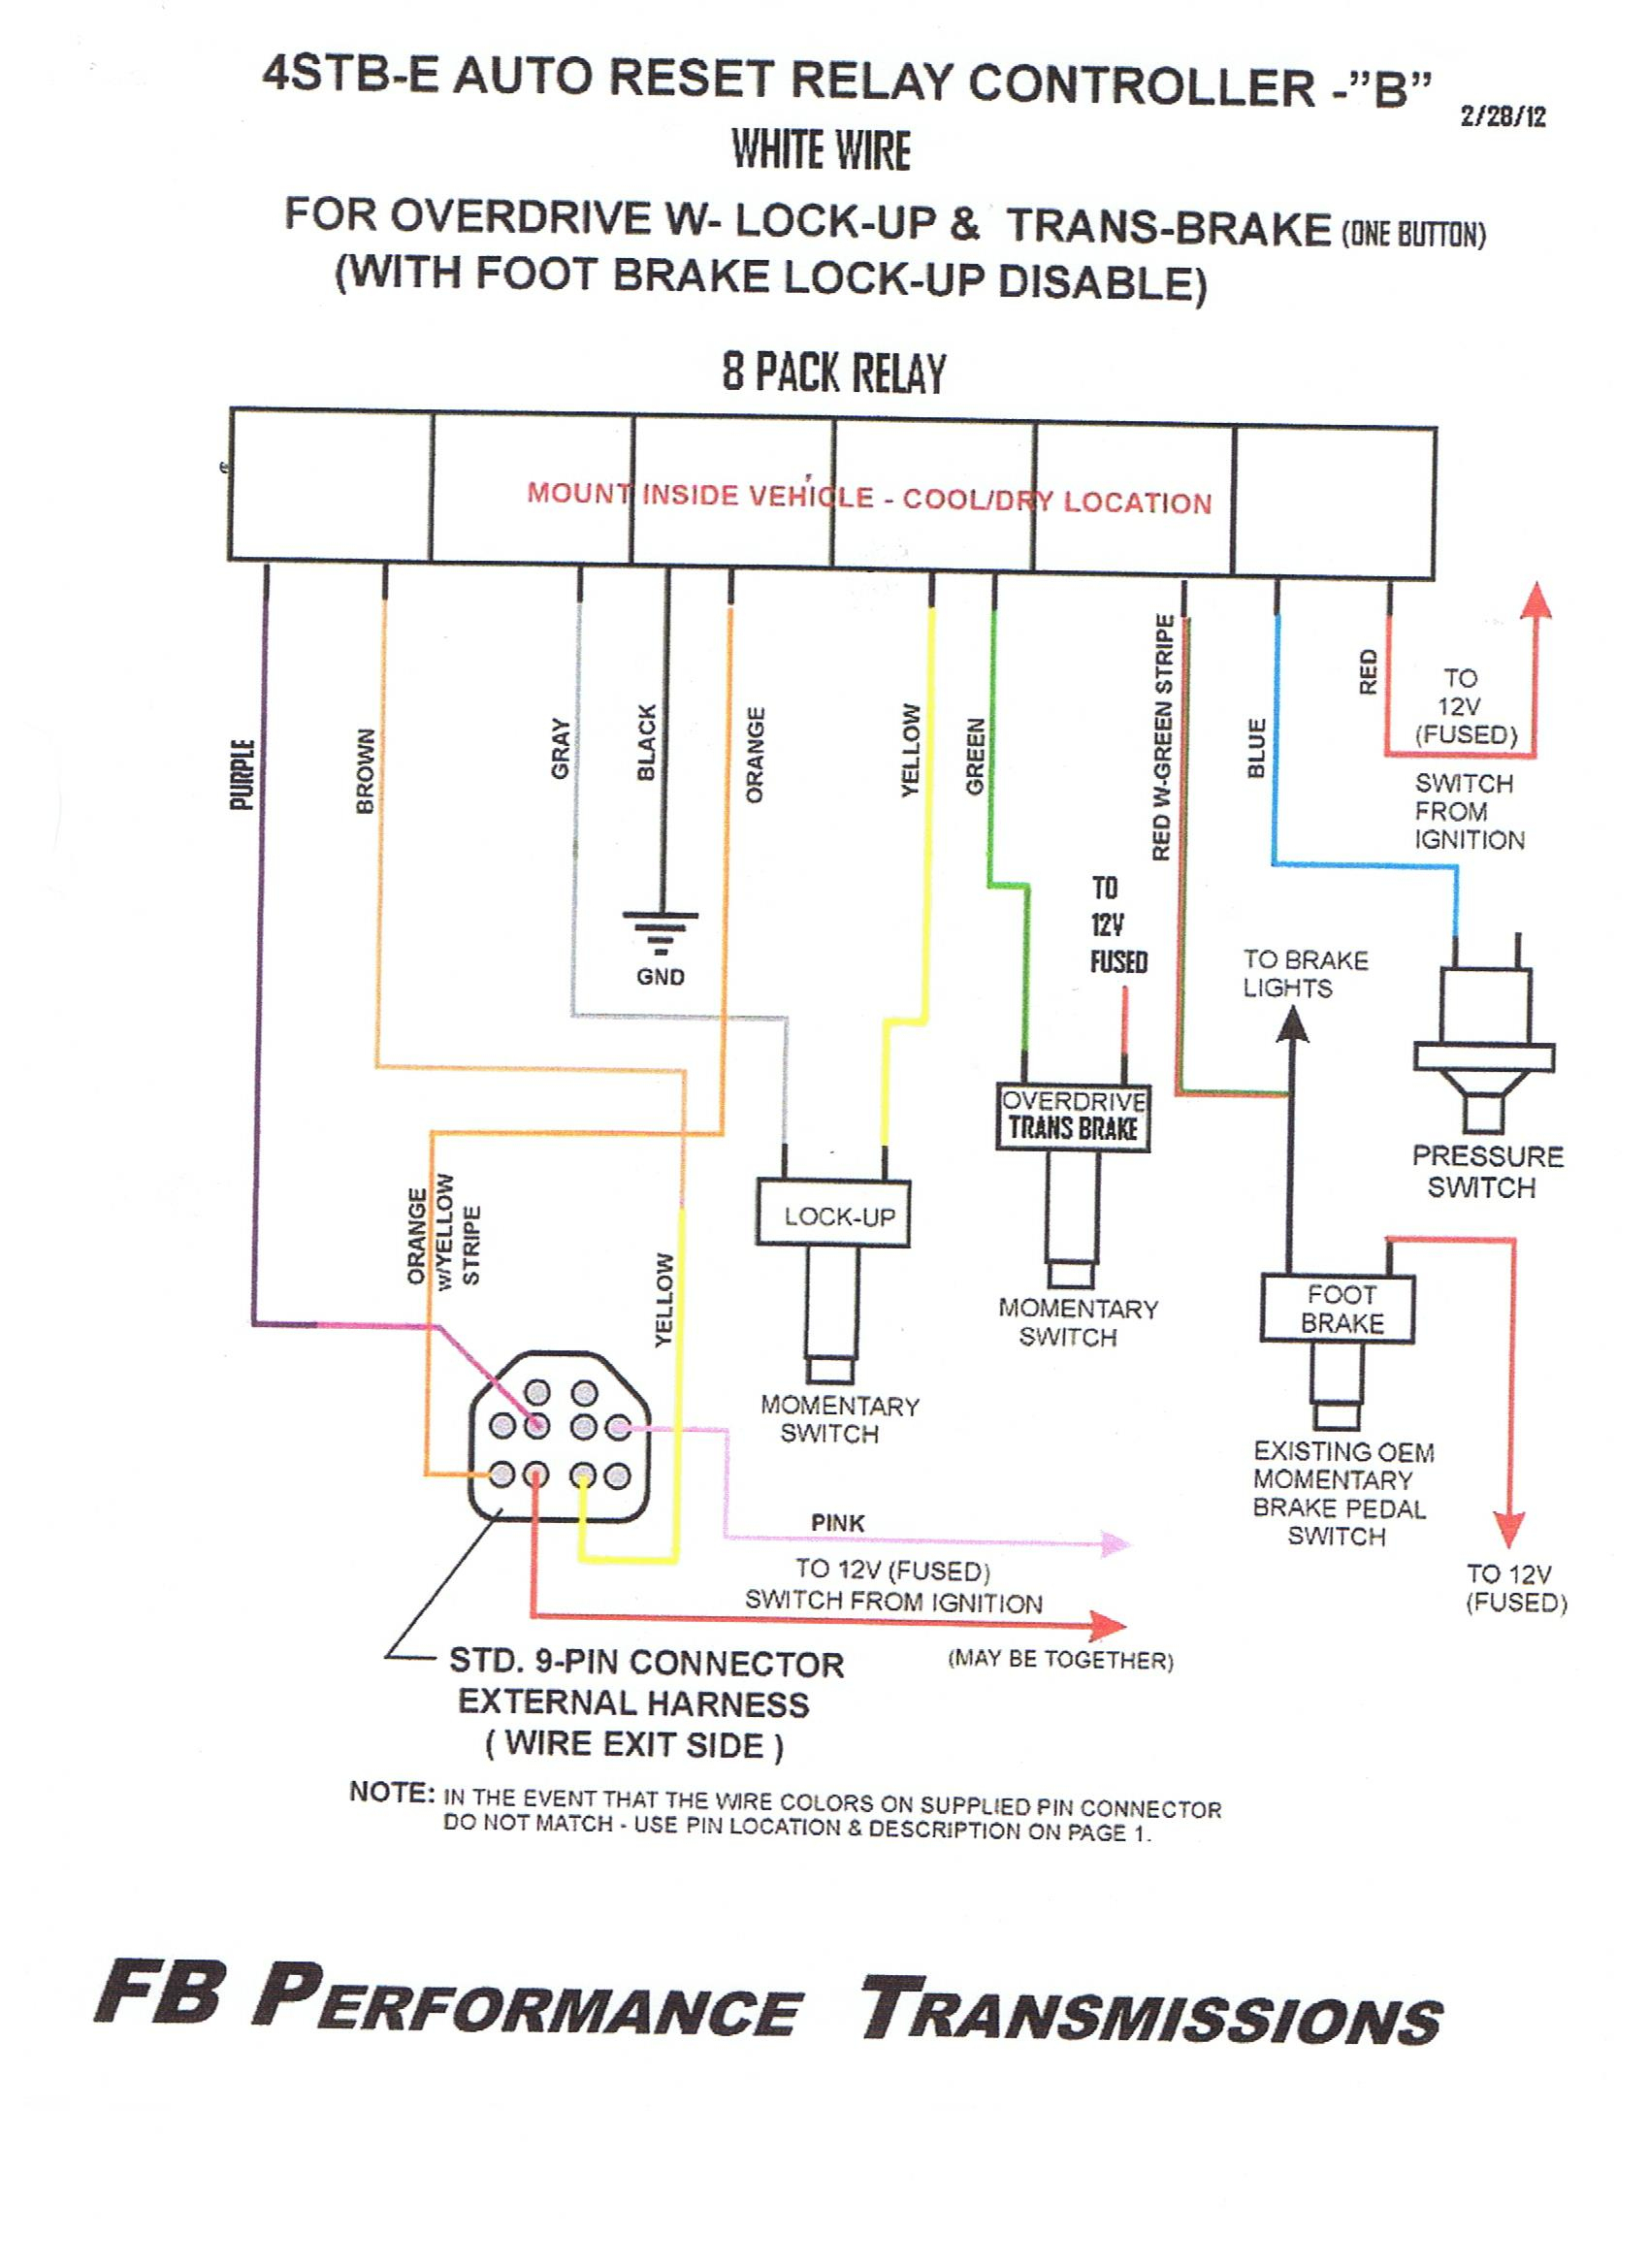 4T40E Diagram | Wiring Diagram - 4L60E Wiring Harness Diagram